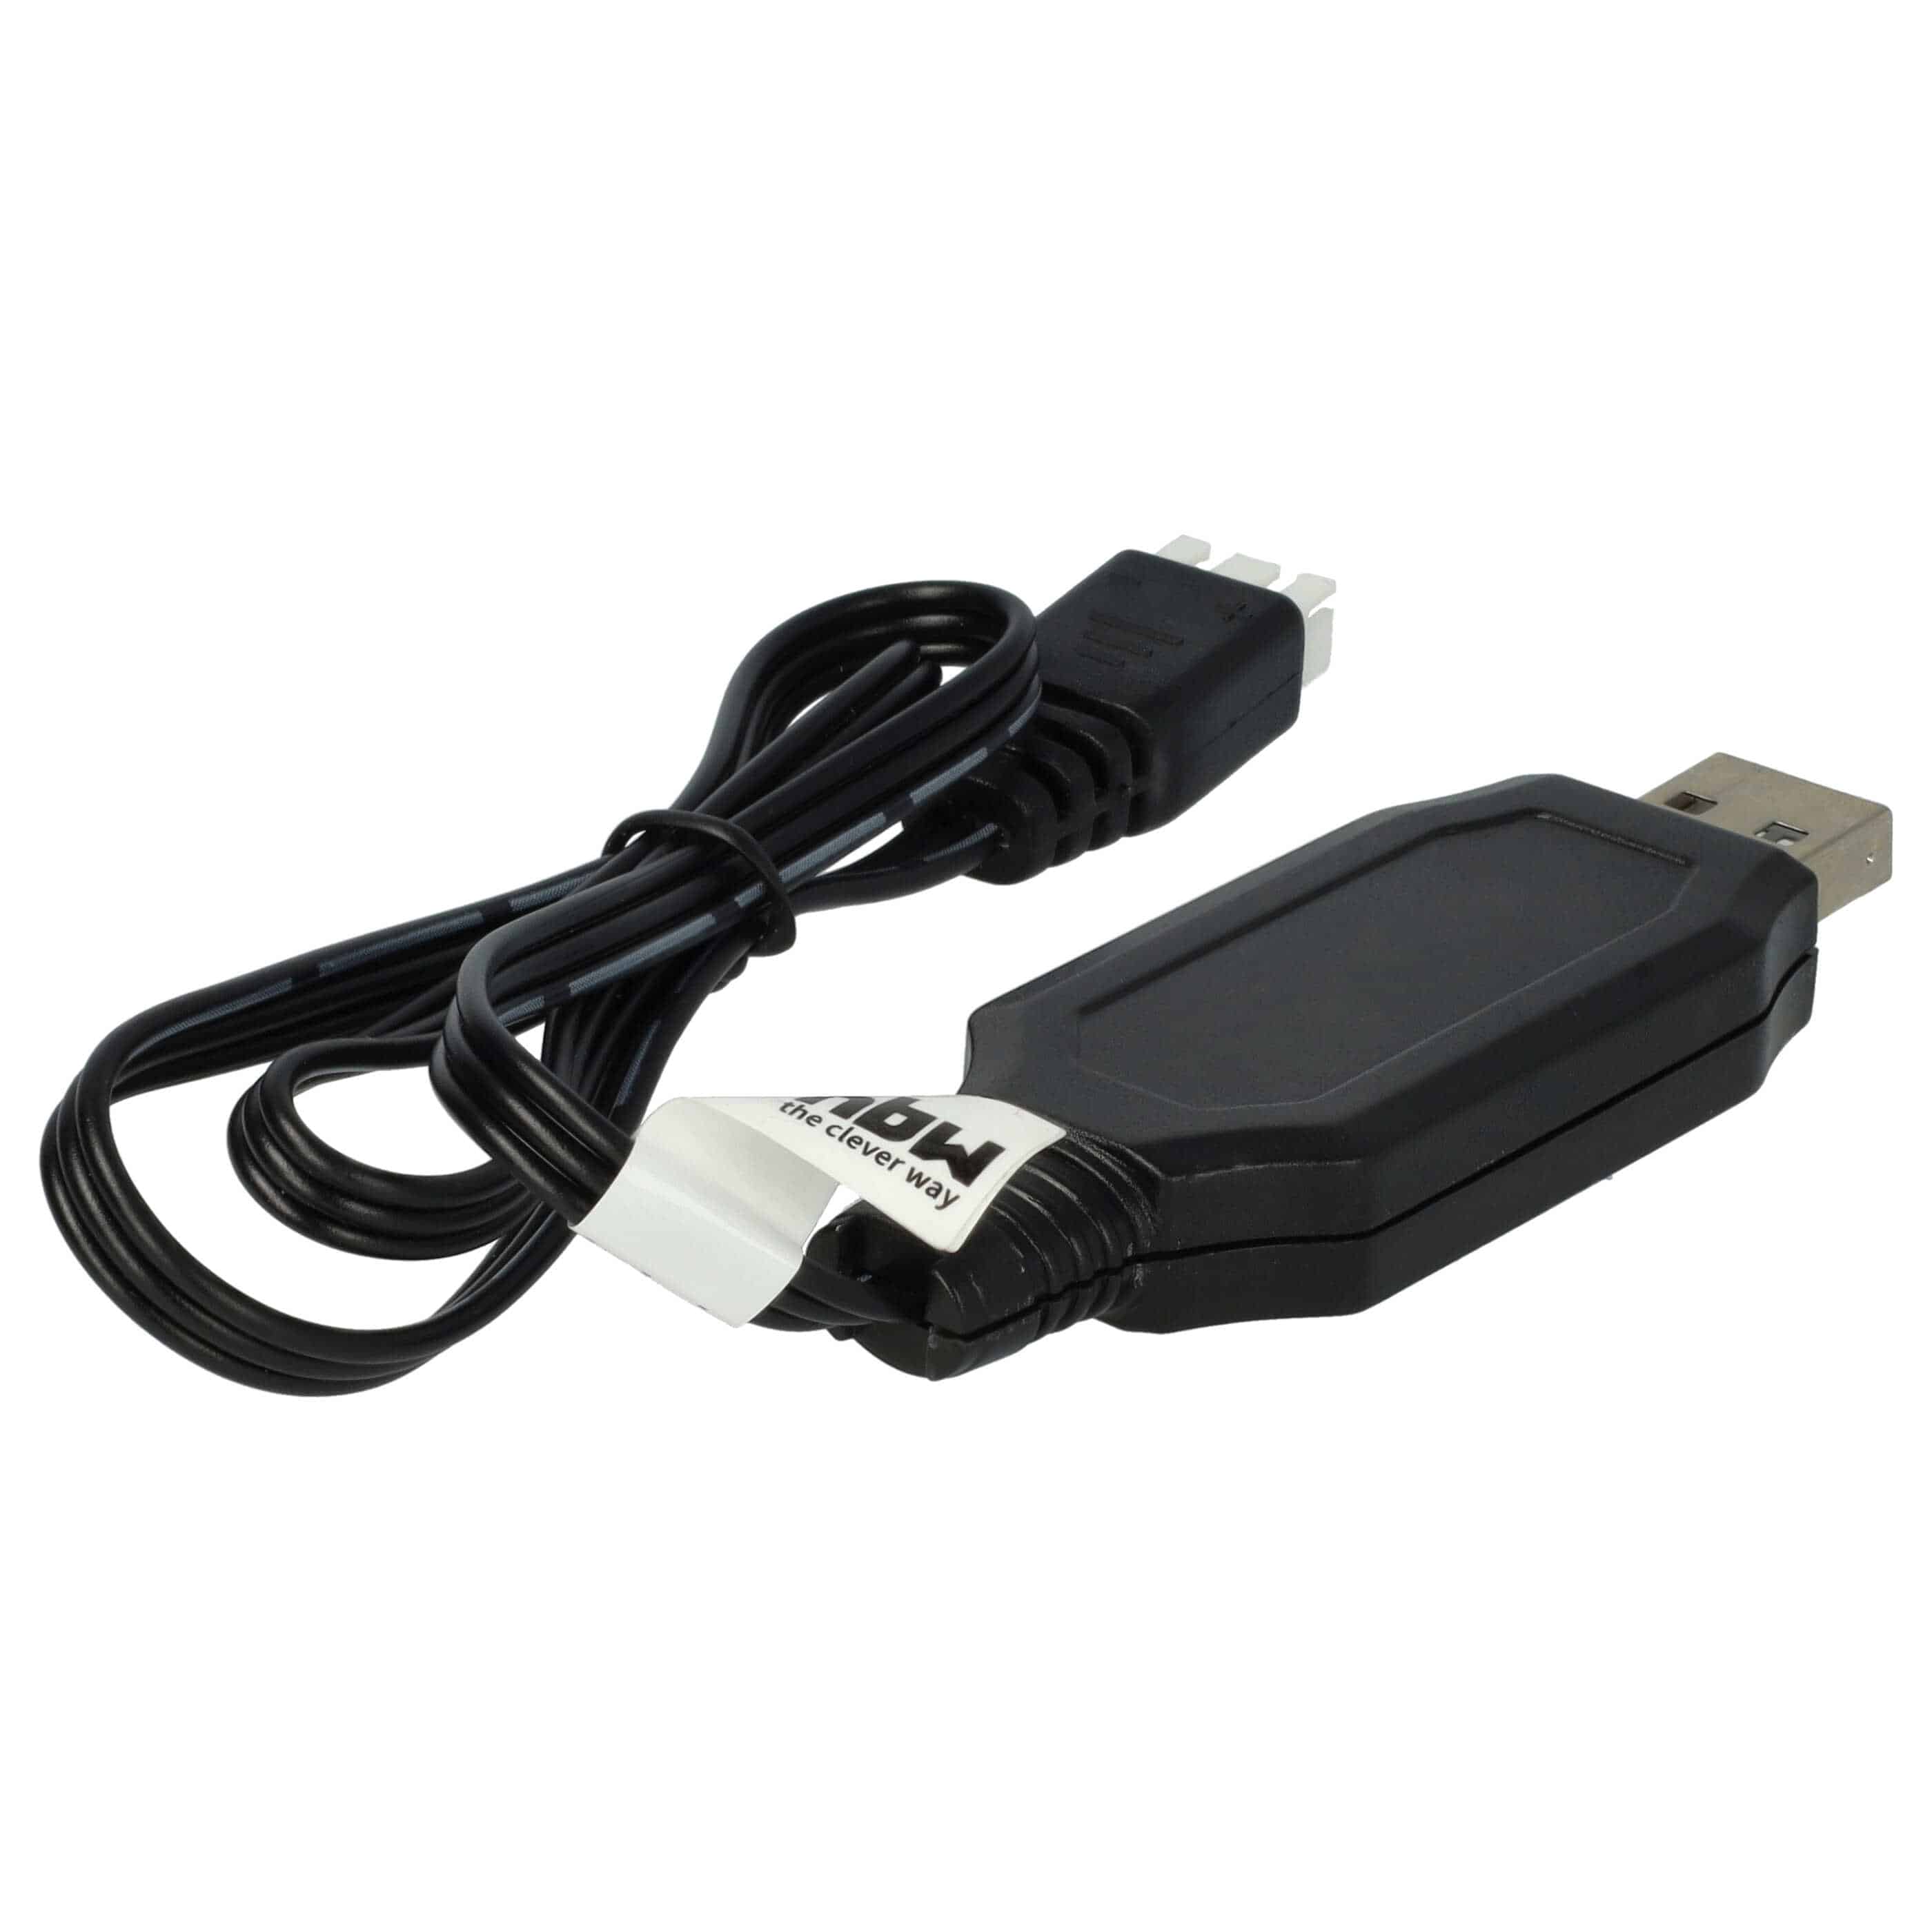 Cavo di ricarica USB per batterie RC con connettore JST XH-3P, pacco batteria per modelli RC - 60 cm 4,2 V